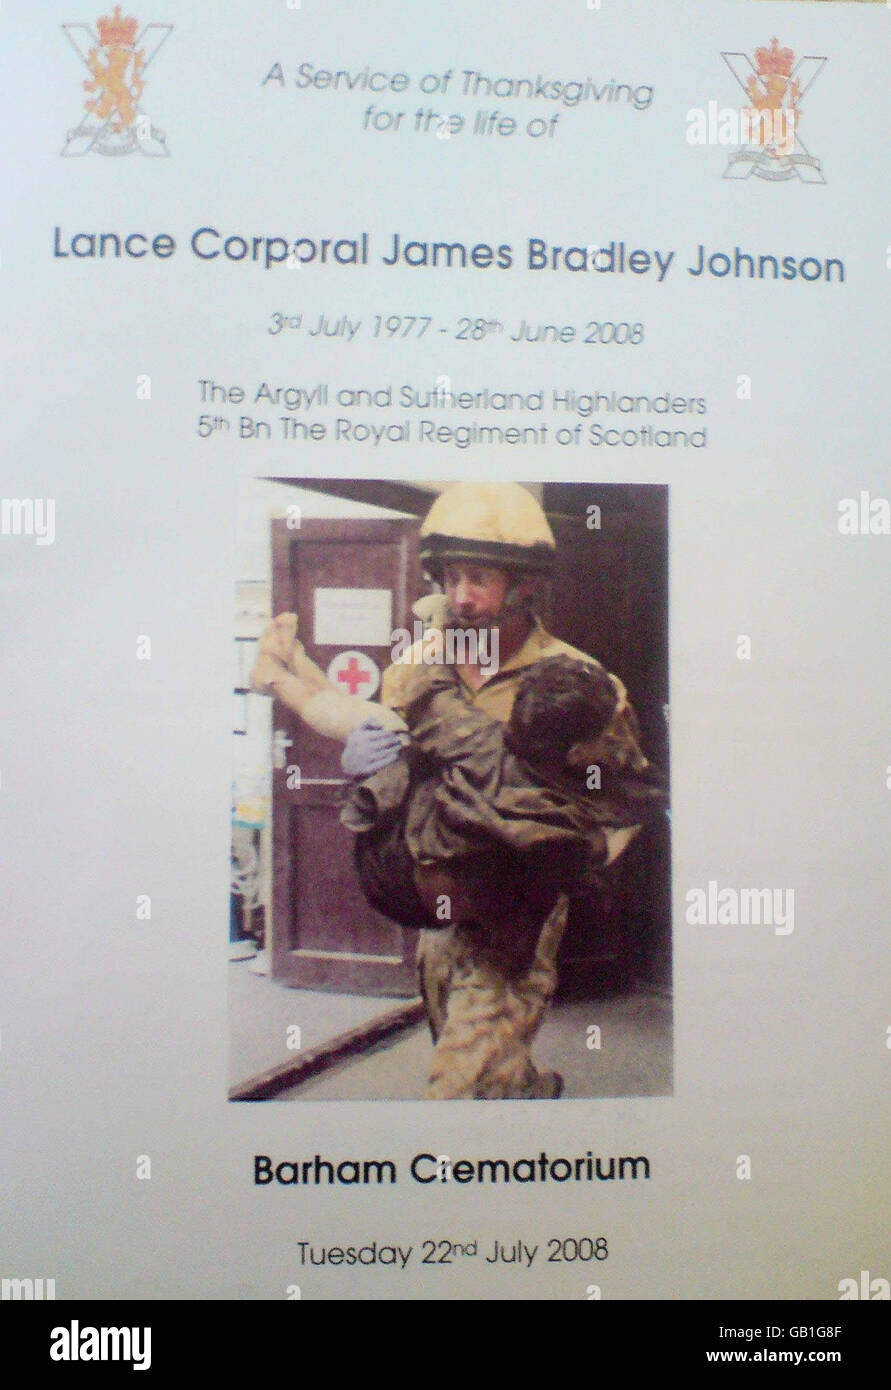 Das Flugblatt des Order of Service für die Beerdigung von Lance Corporal James 'Jimmy' Johnson vom 5. Bataillon des Royal Regiment in Barham Crematorium in der Nähe von Canterbury, Kent. Stockfoto